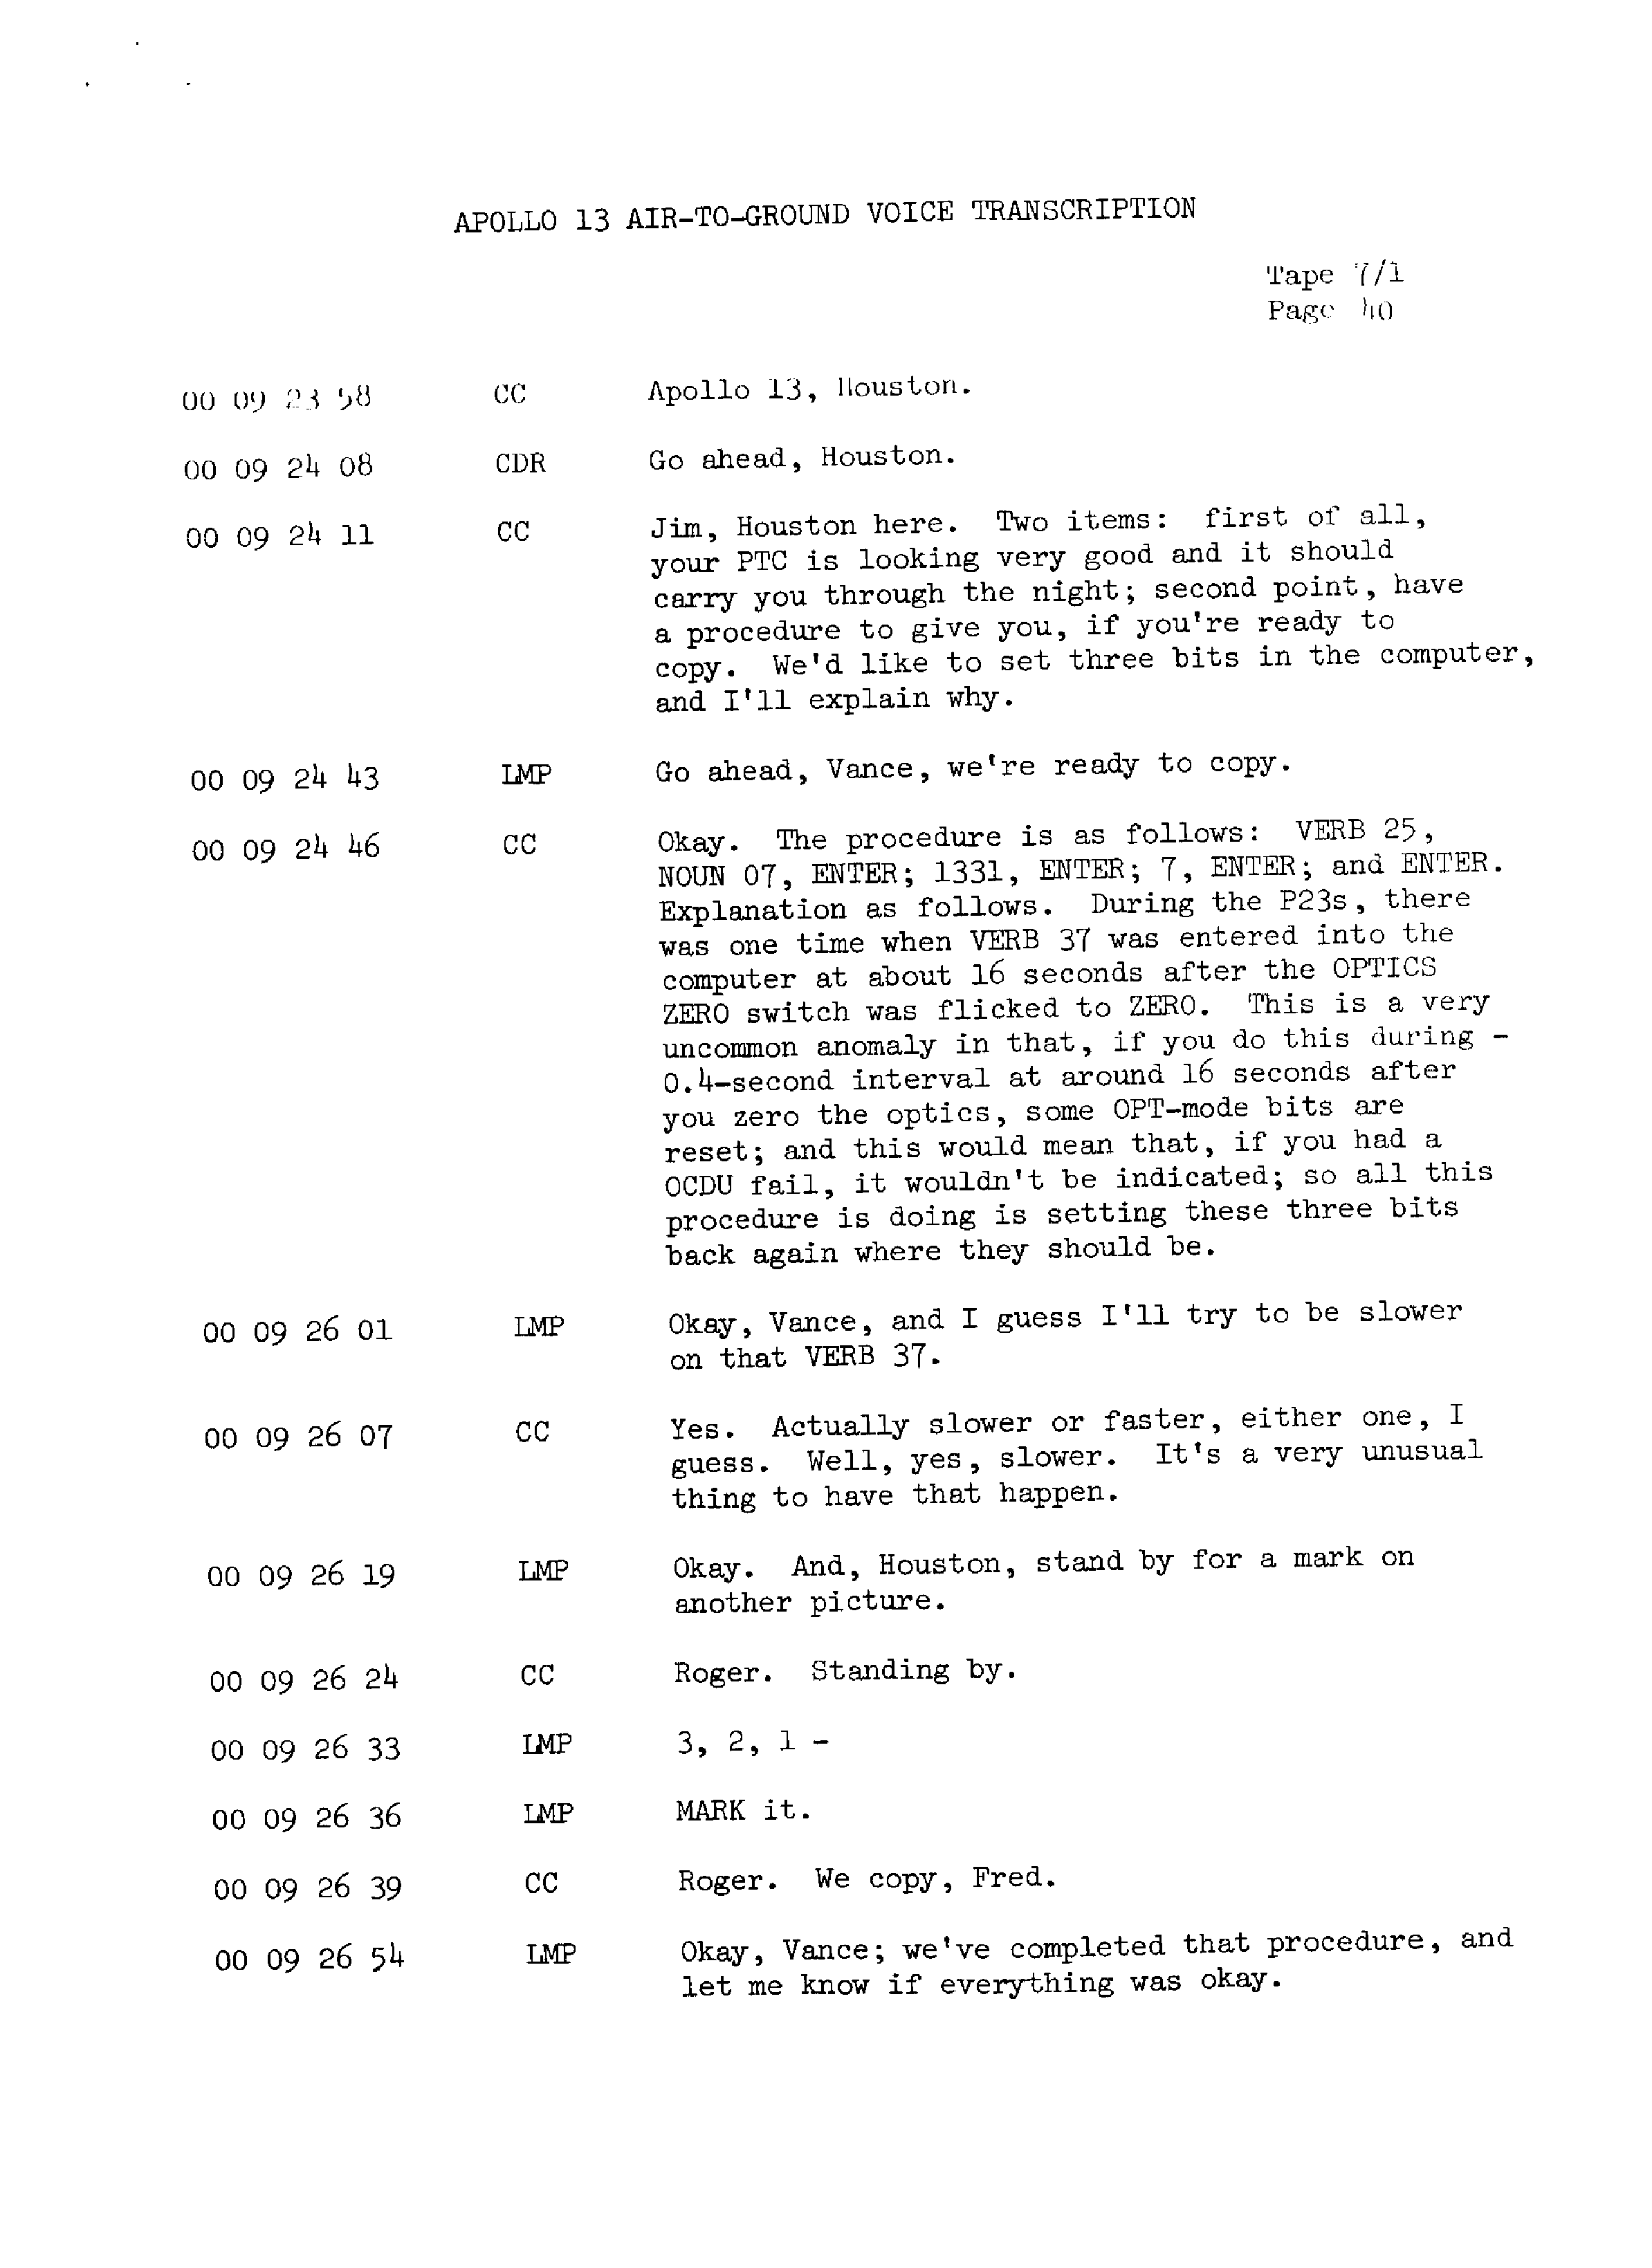 Page 47 of Apollo 13’s original transcript